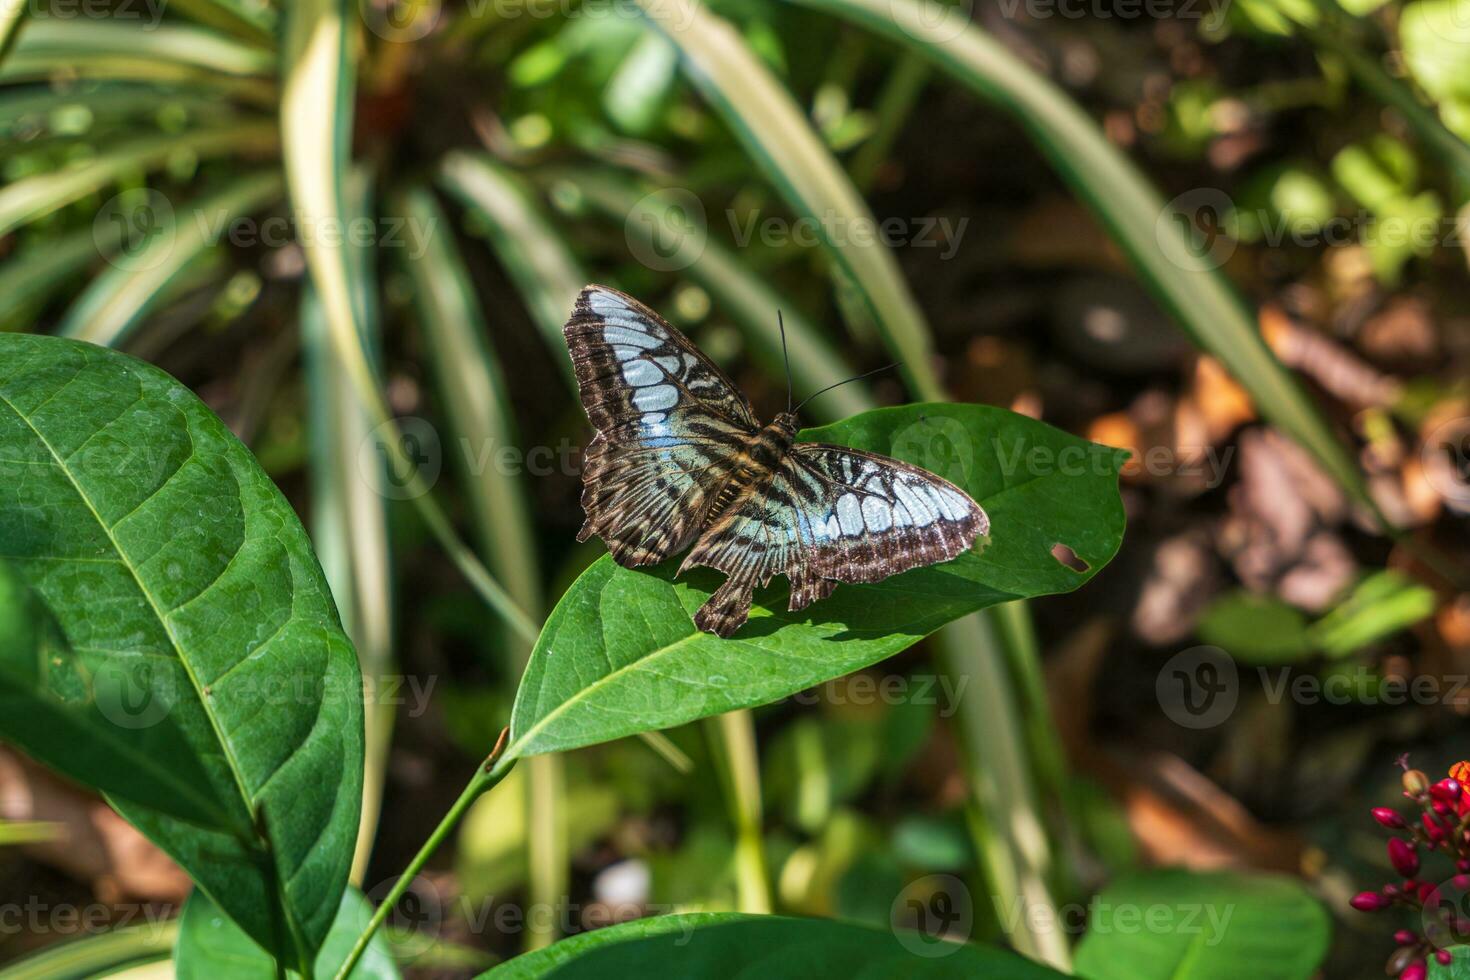 tosquiadeira borboleta ou partenos Sílvia espalhar Está quebrado asas em verde folha borrado fundo, uma ampla ninfalida borboleta a partir de sul leste Ásia foto